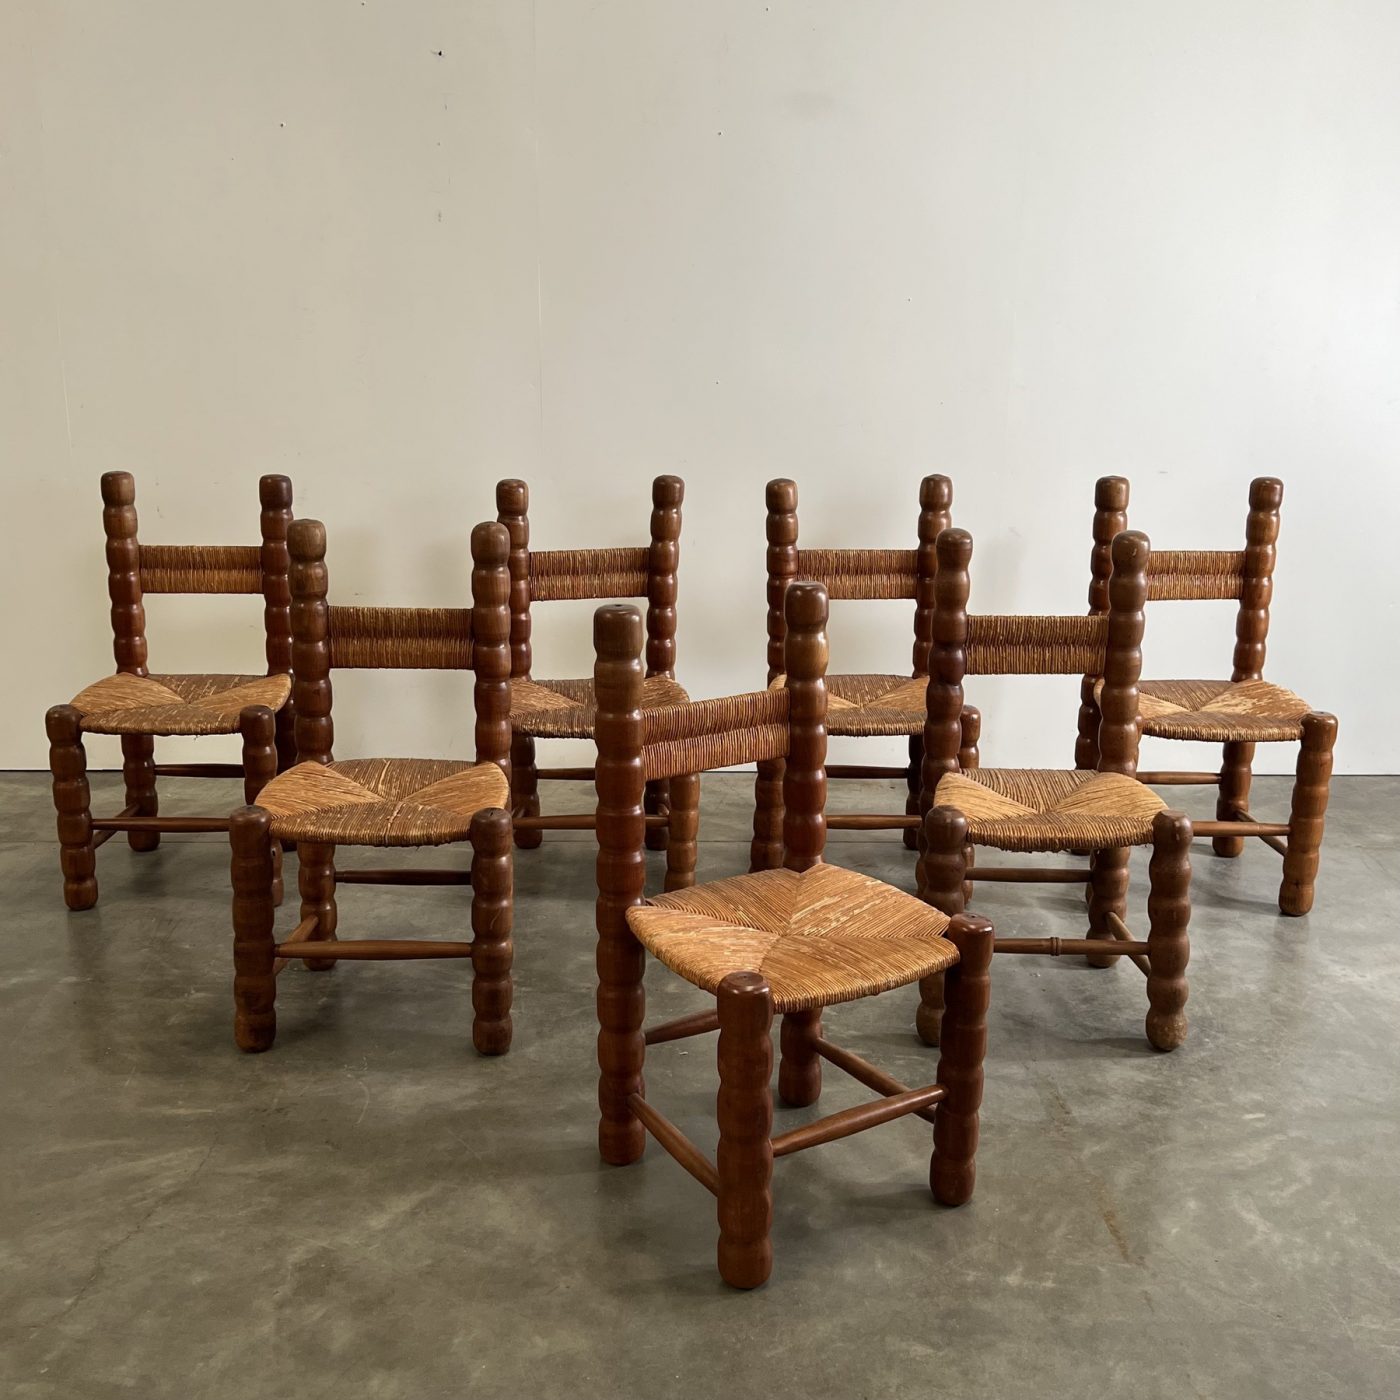 objet-vagabond-massive-chairs0005